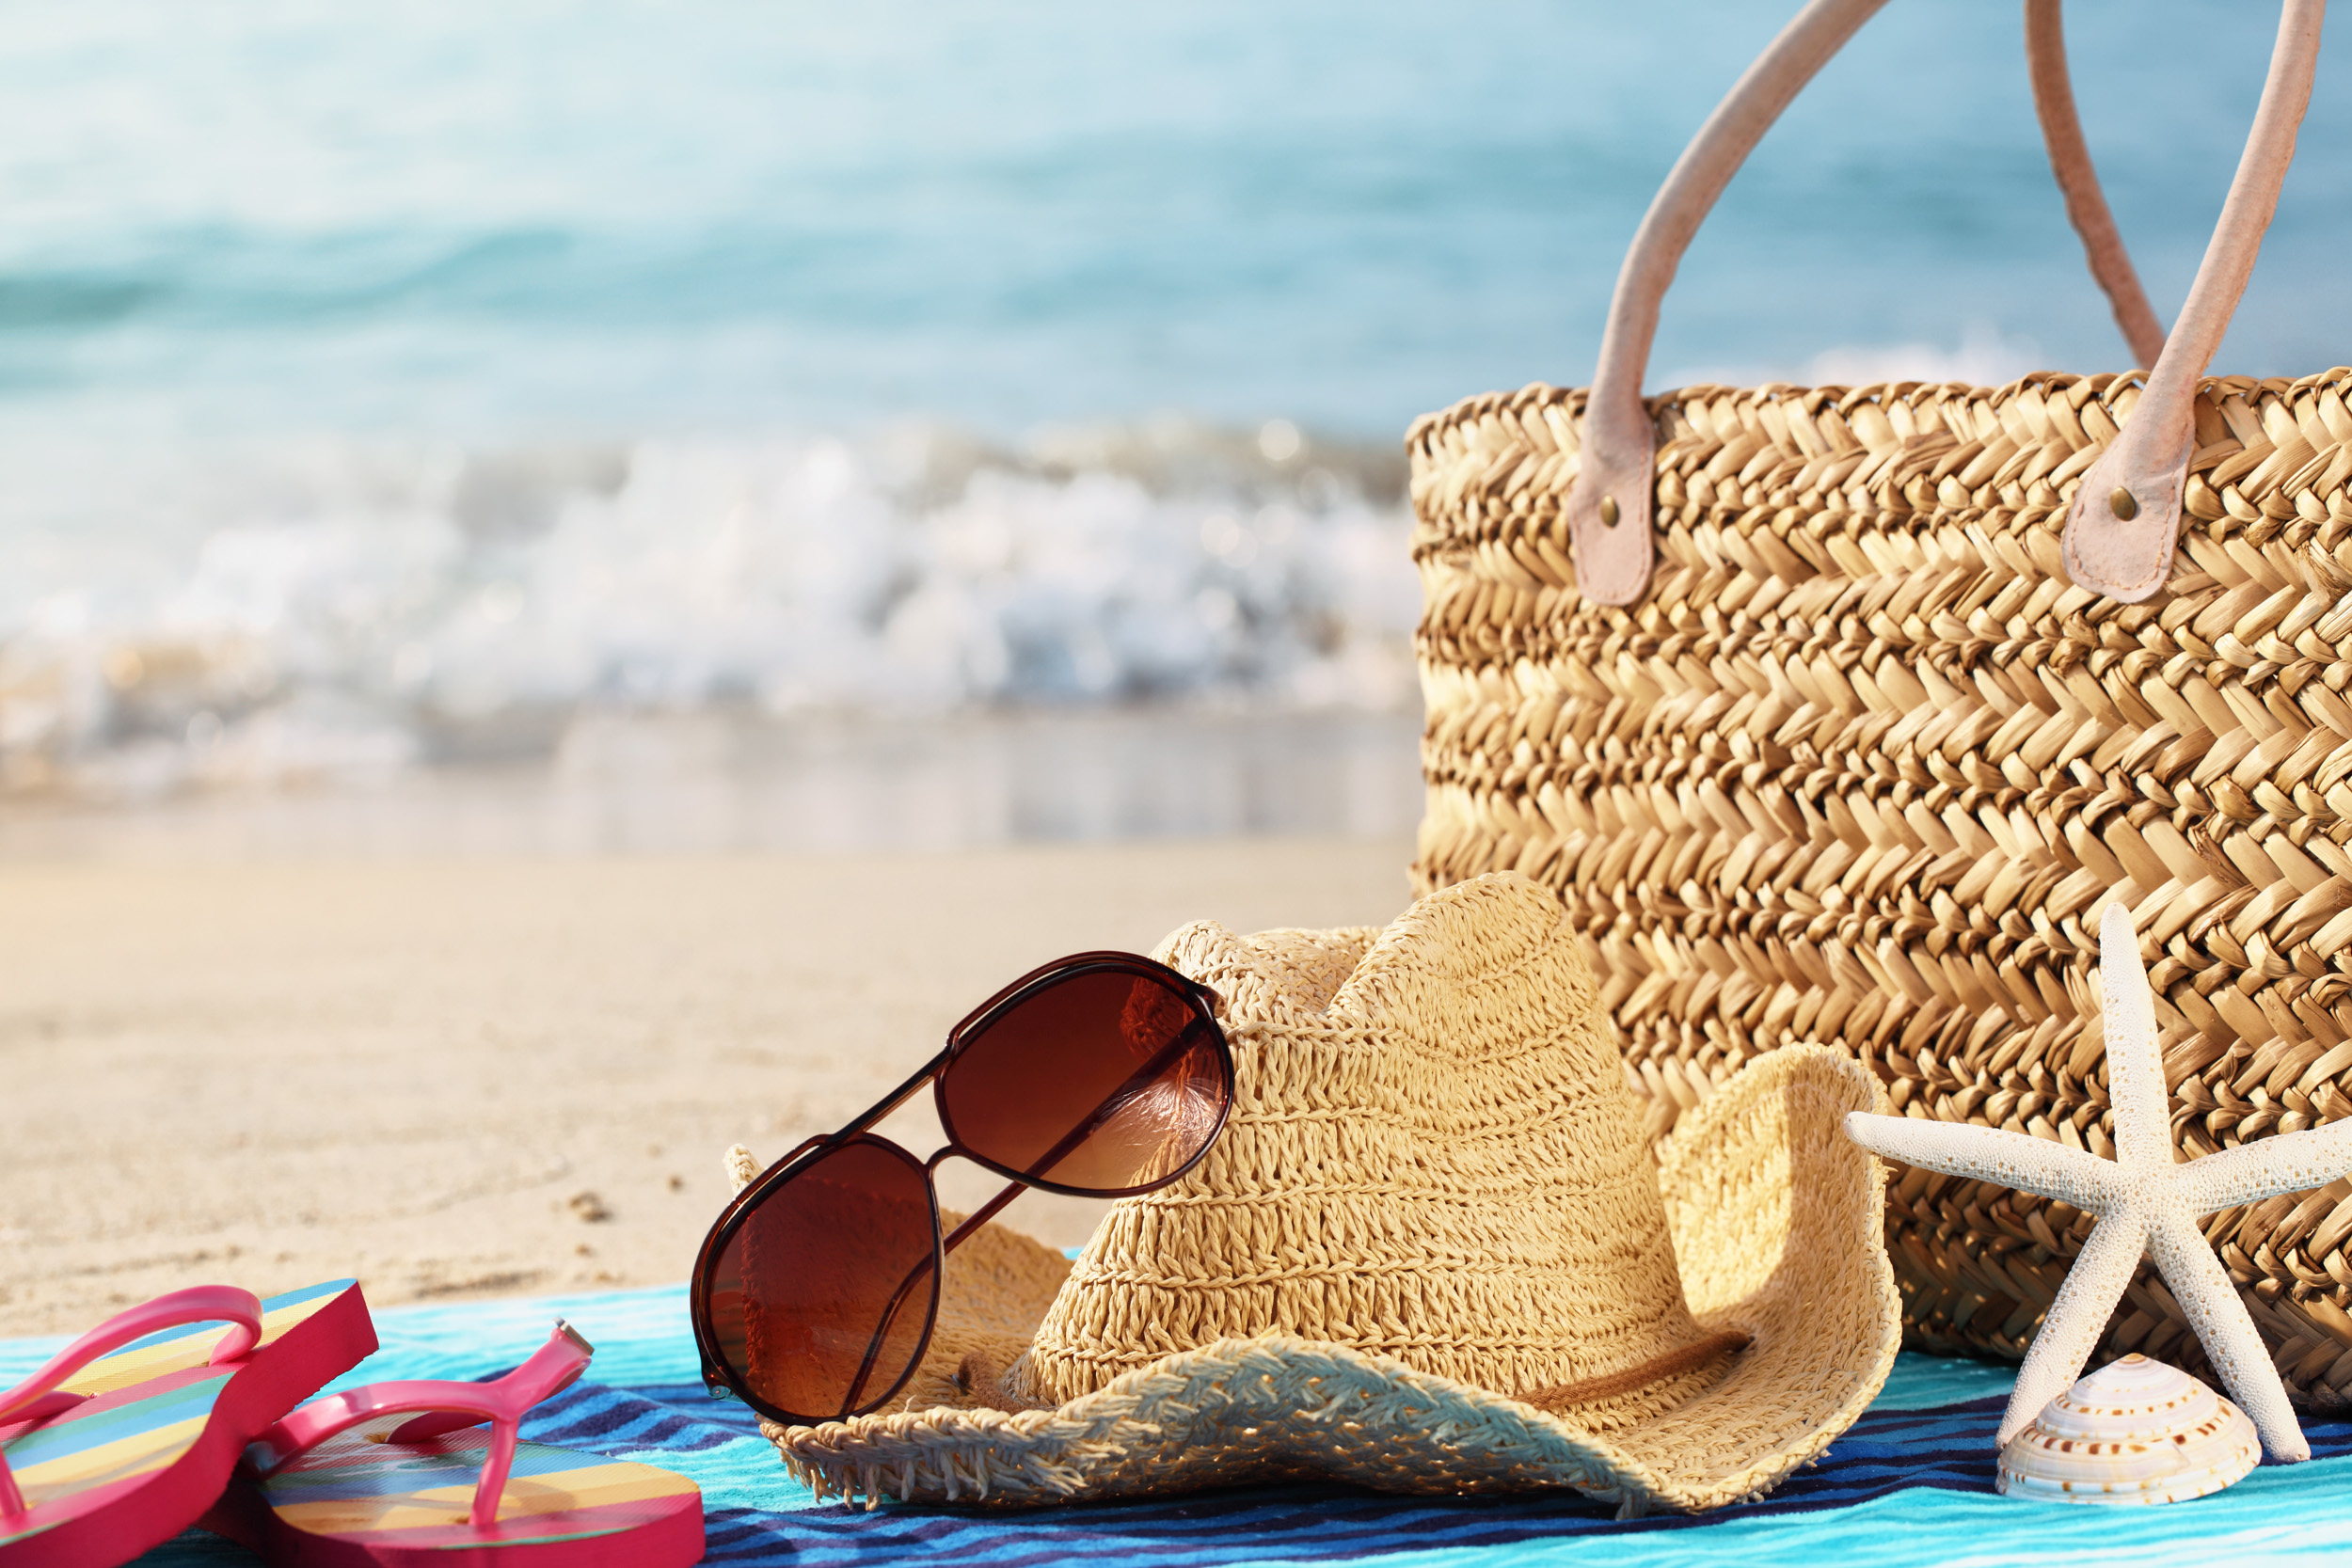 Beach Holiday Deals Still Proving Popular